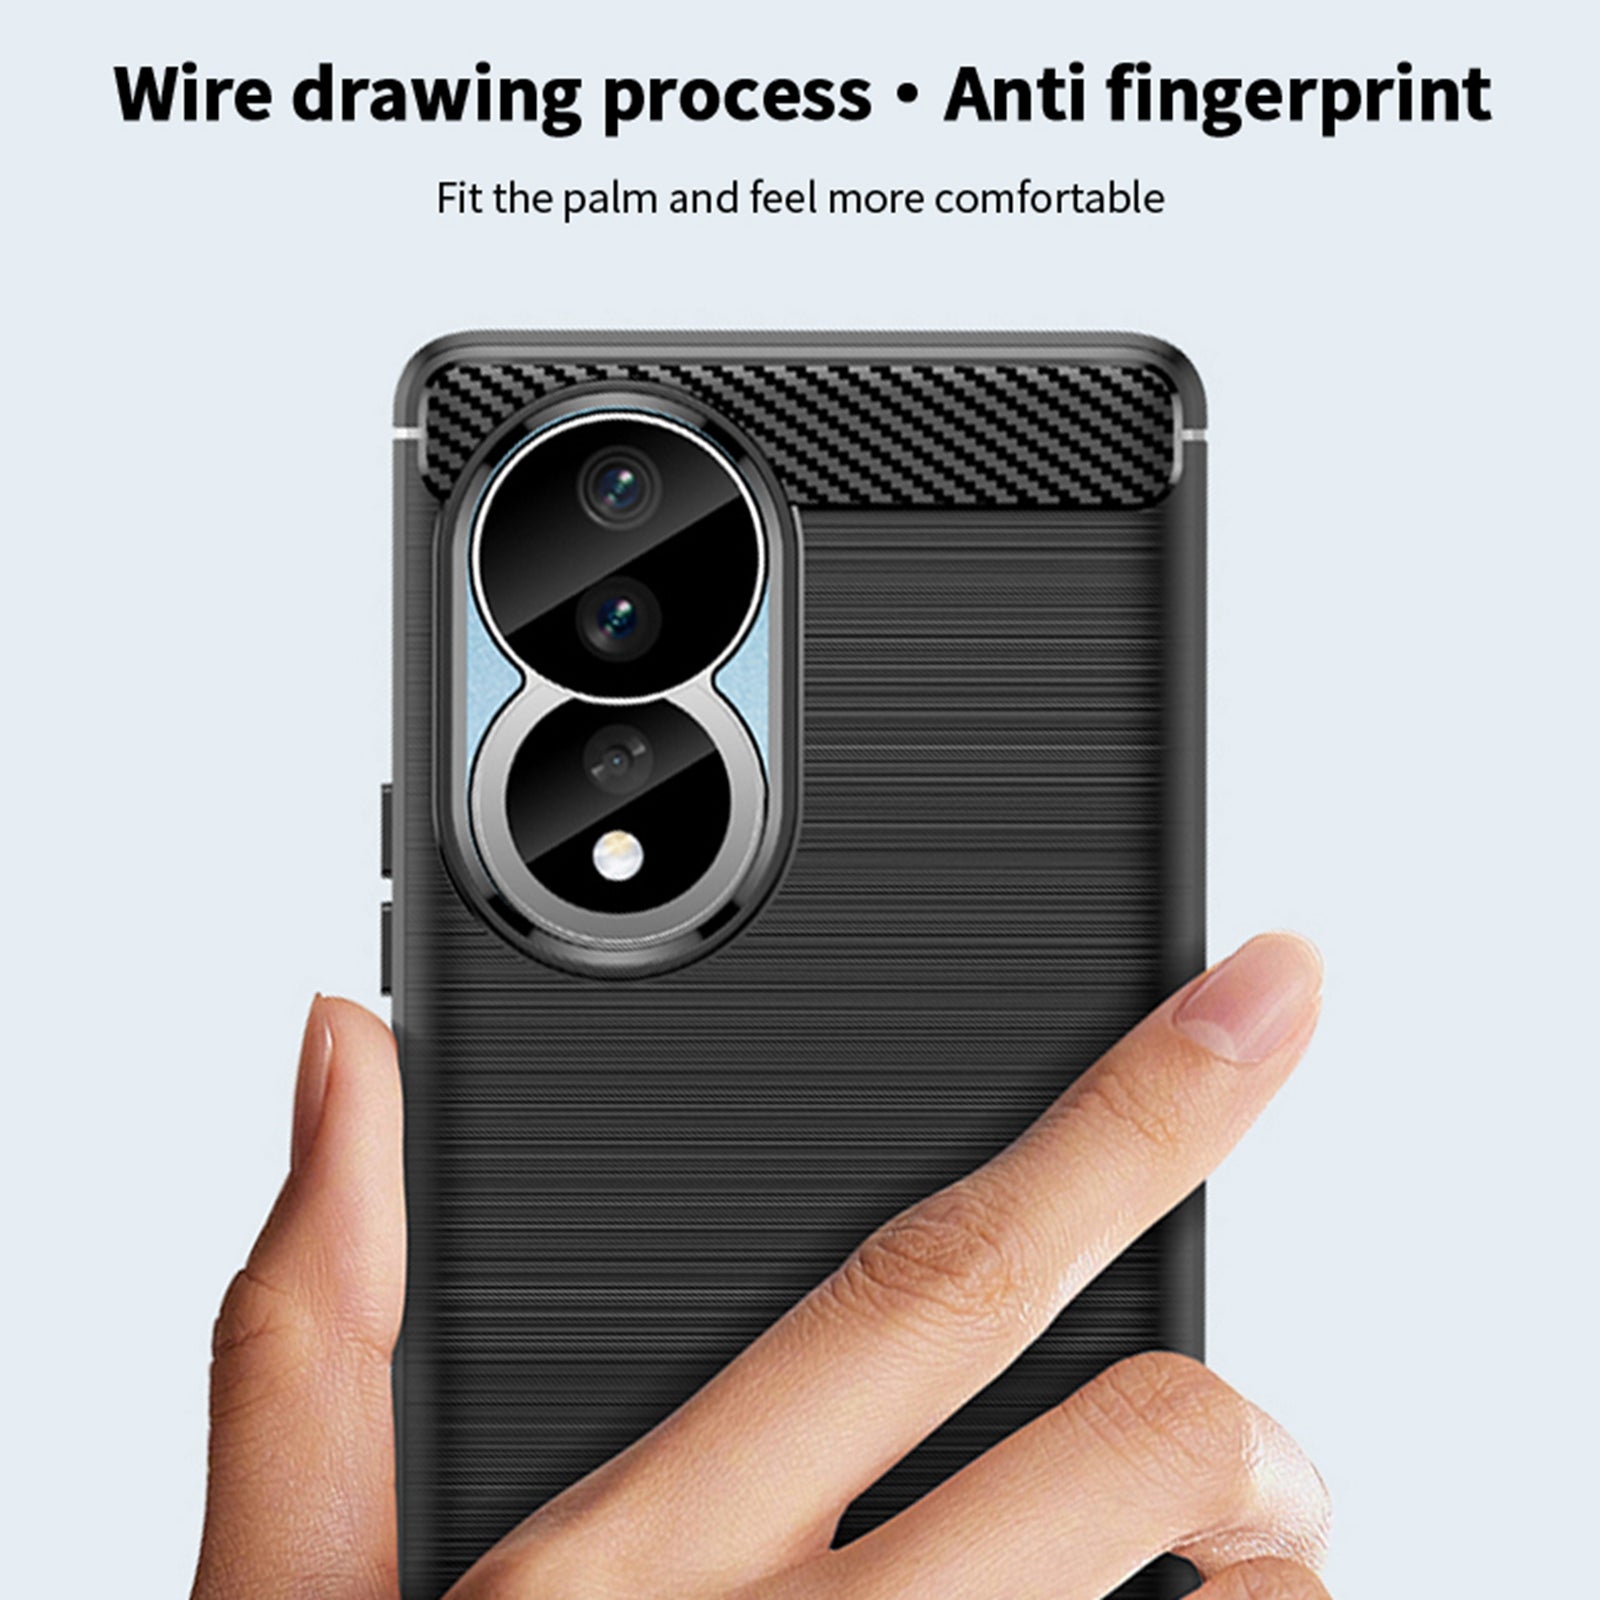 Uniqkart TPU Series-1 for Honor 90 Carbon Fiber Soft TPU Case Anti-scratch Brushed Phone Cover - Black